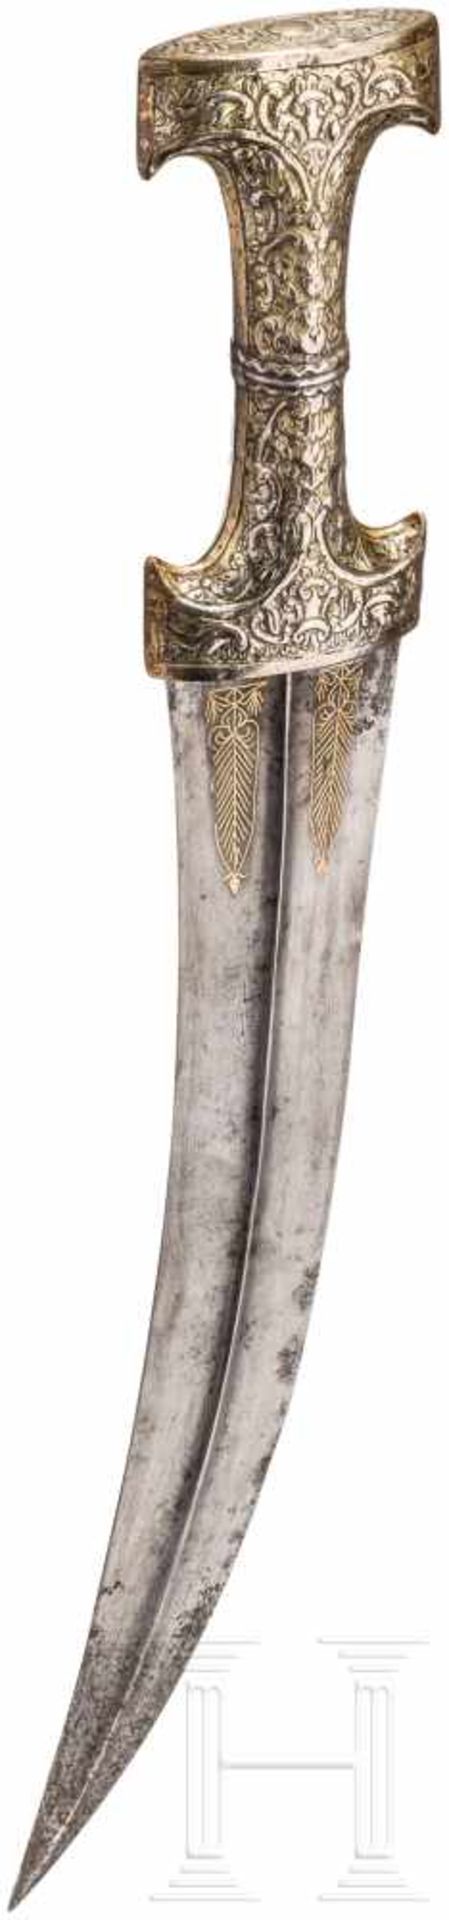 Großer, silbermontierter Kandschar, osmanisch, 2. Hälfte 18. Jhdt.Zweischneidige, leicht gekrümmte - Bild 2 aus 4